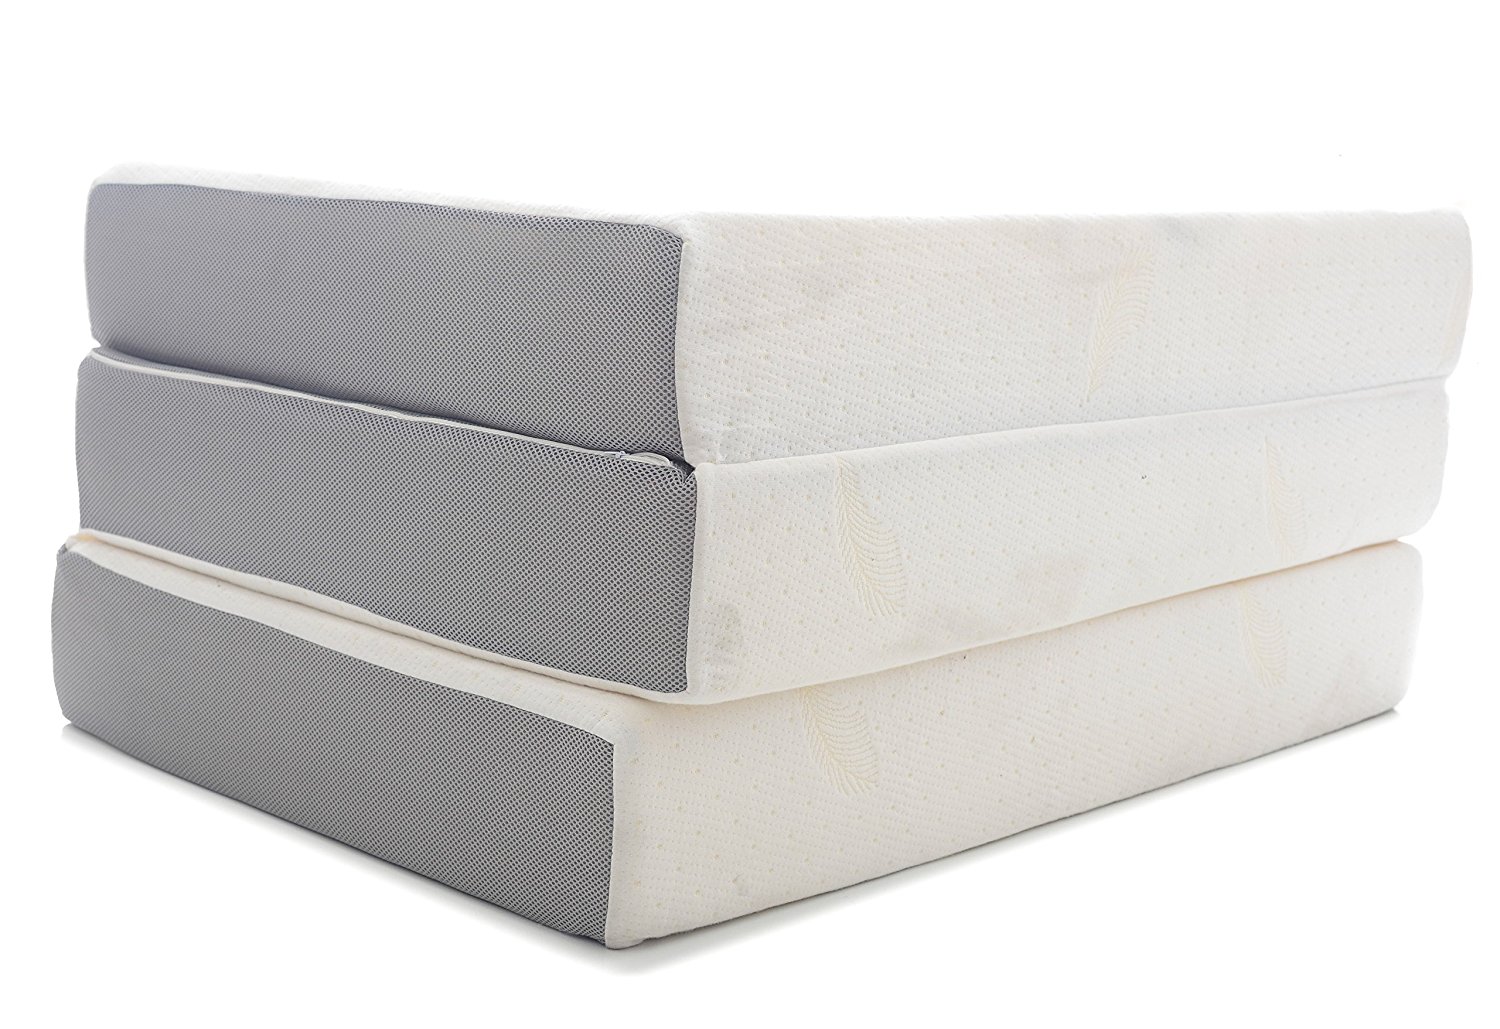 6 folding twin mattress